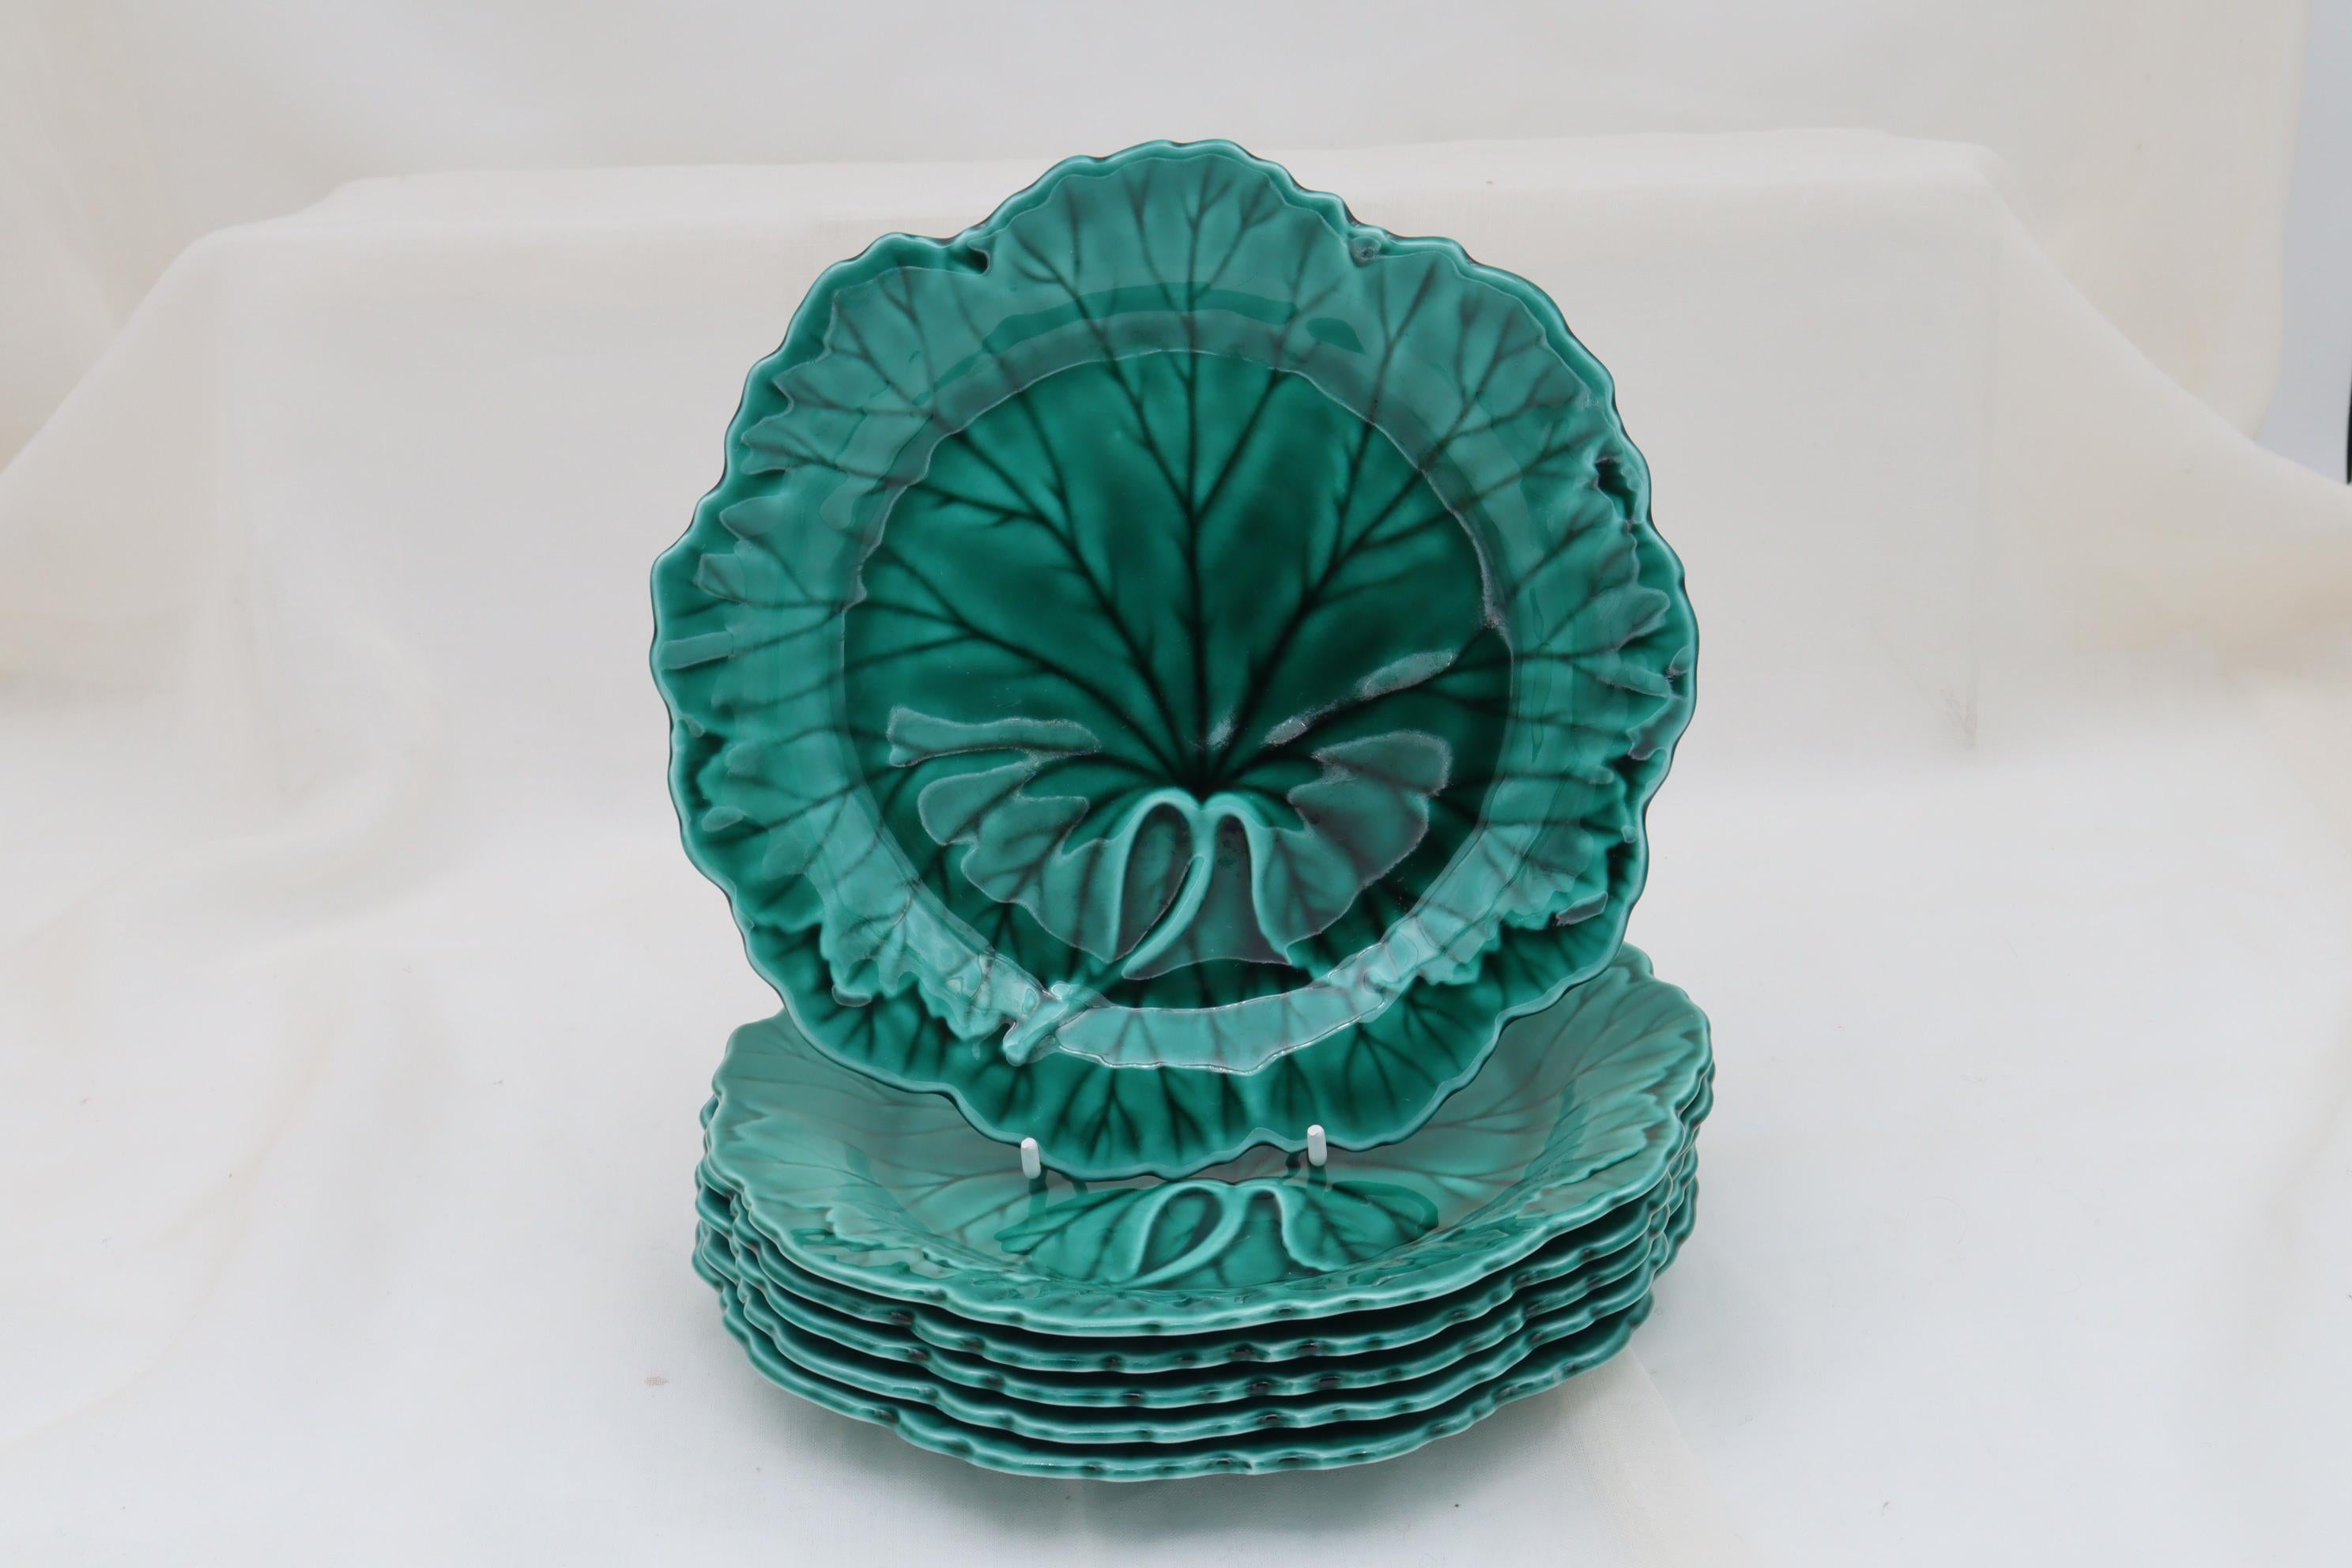 Un ensemble de six assiettes Wedgwood décorées d'un motif moulé d'une feuille de chou et d'un bord panaché, recouvertes d'une glaçure majolique verte transparente. Ils mesurent 200 mm (8 pouces) de diamètre et 20 mm (0,75 pouce) de hauteur. Ils sont